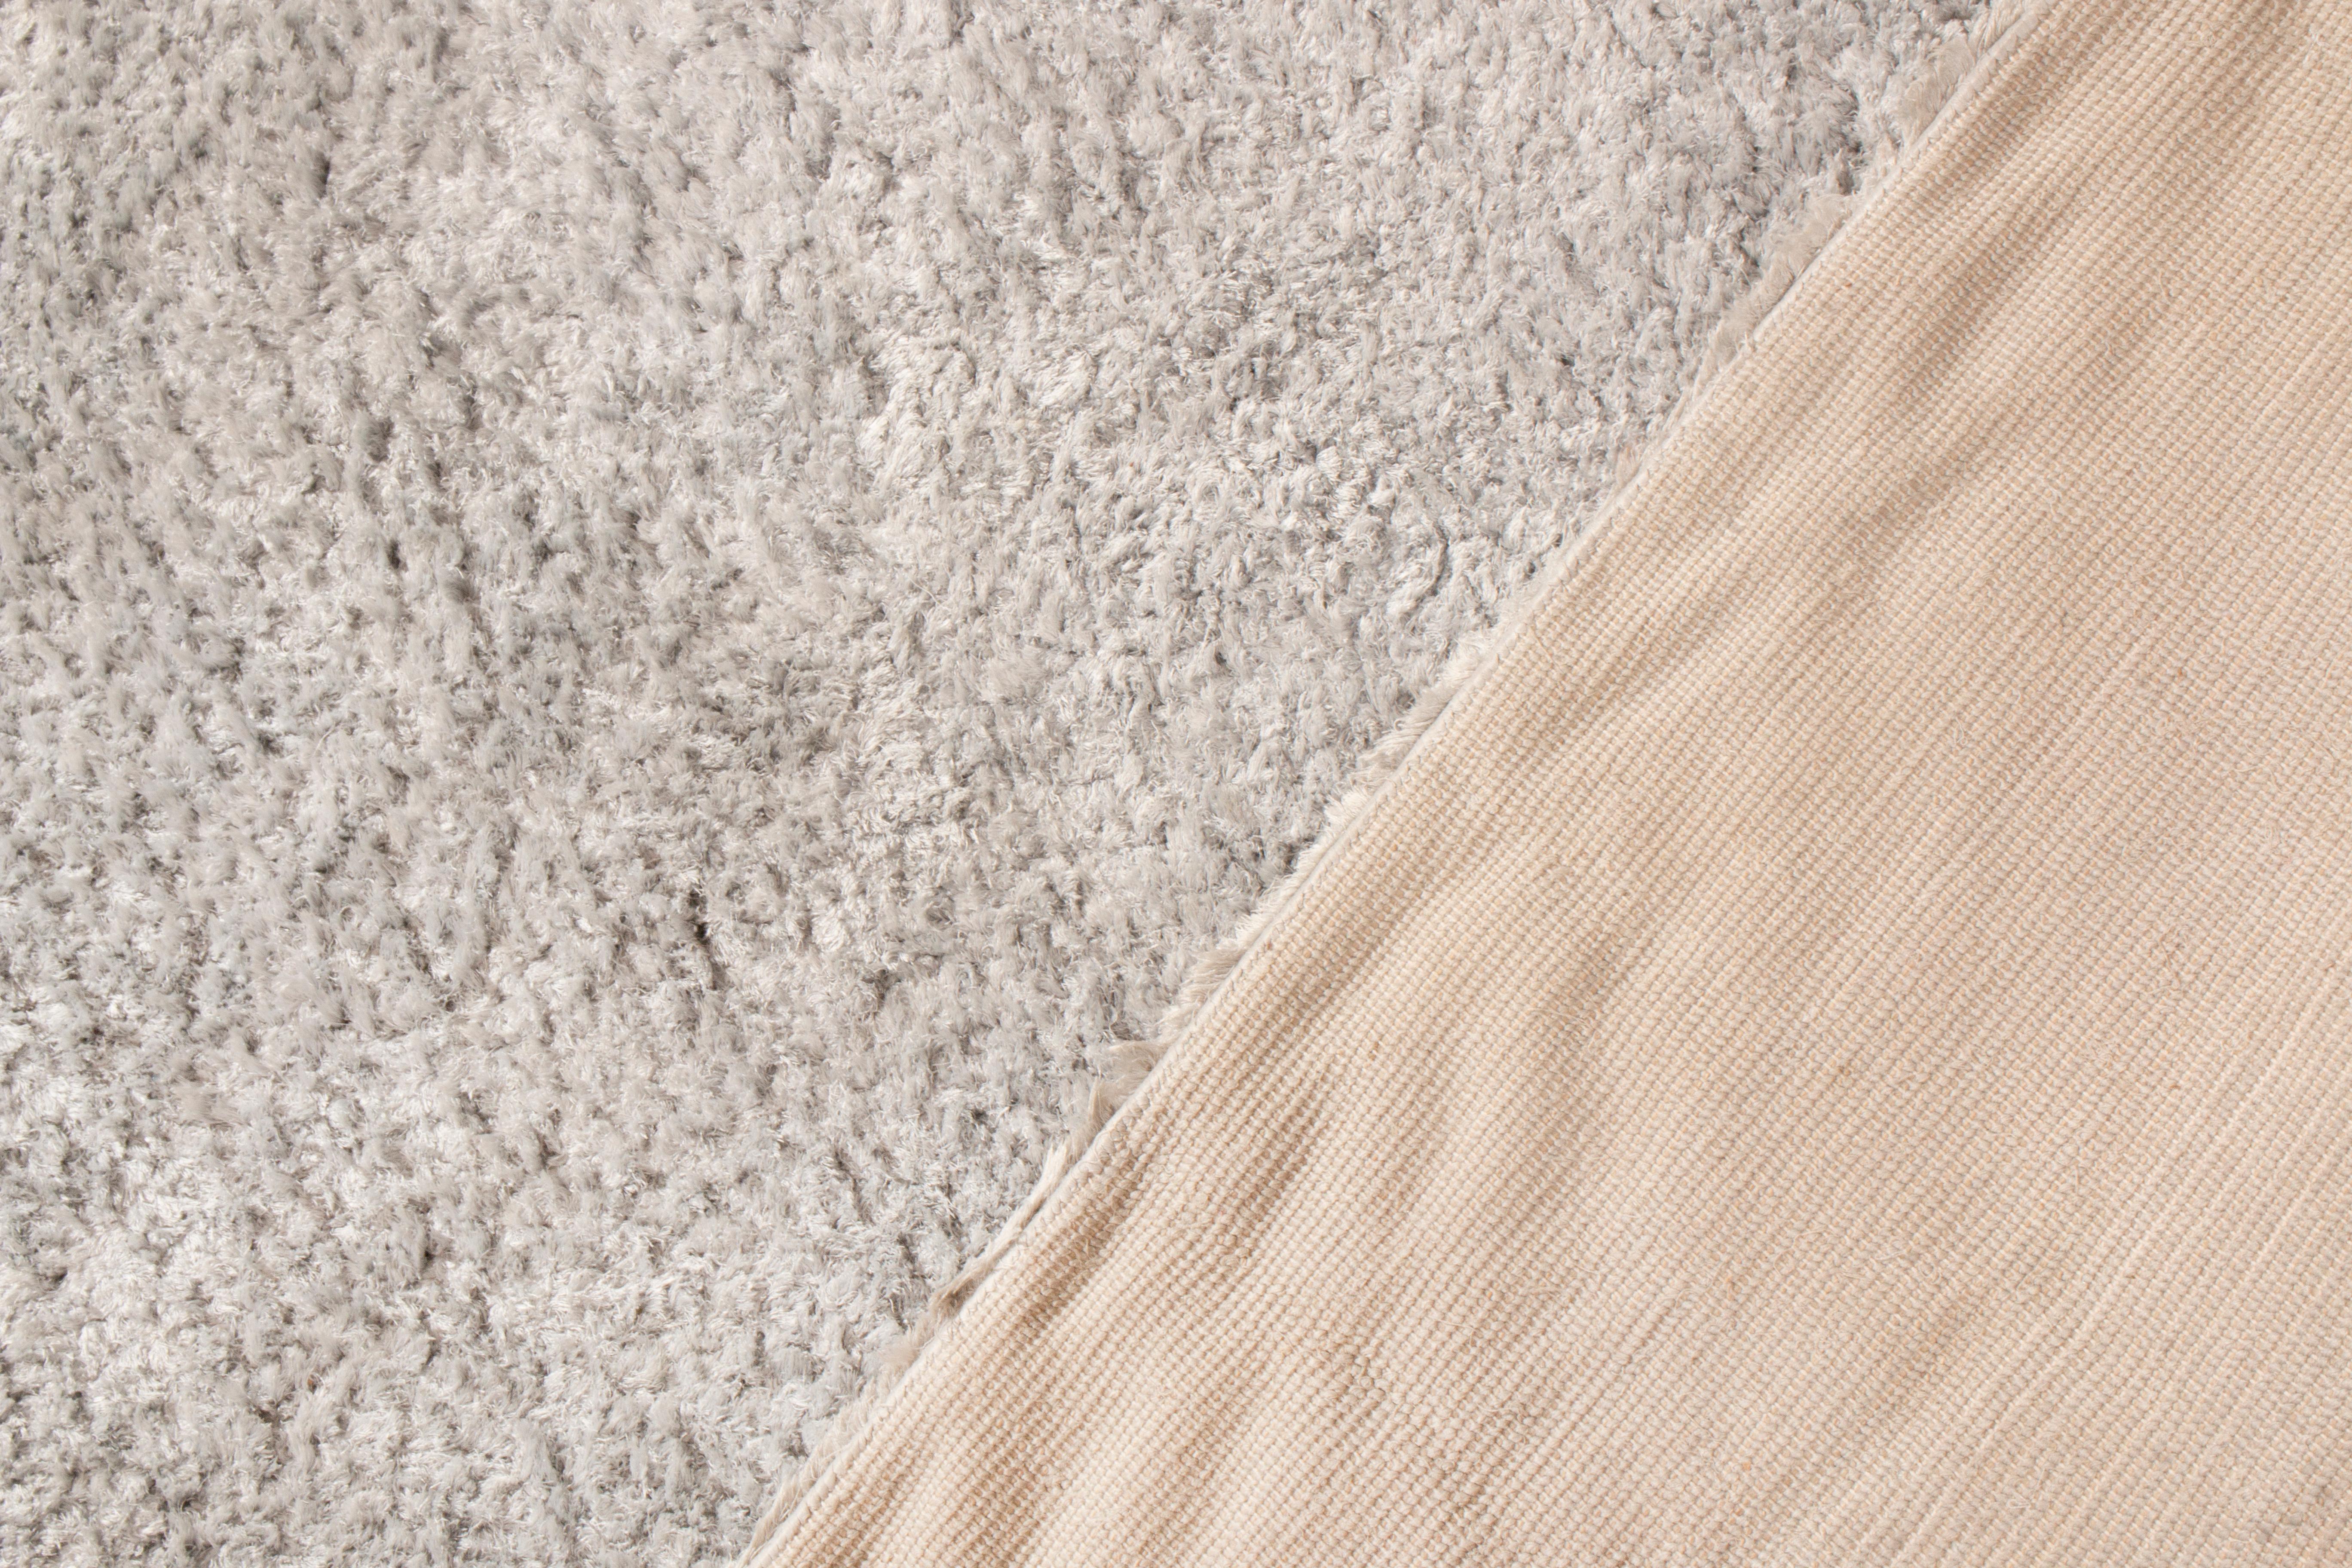 Texturierter, schlichter Teppich von Teppich & Kilims in Grau/Silber in zwei Farbtönen, hoher Flor (Handgeknüpft) im Angebot